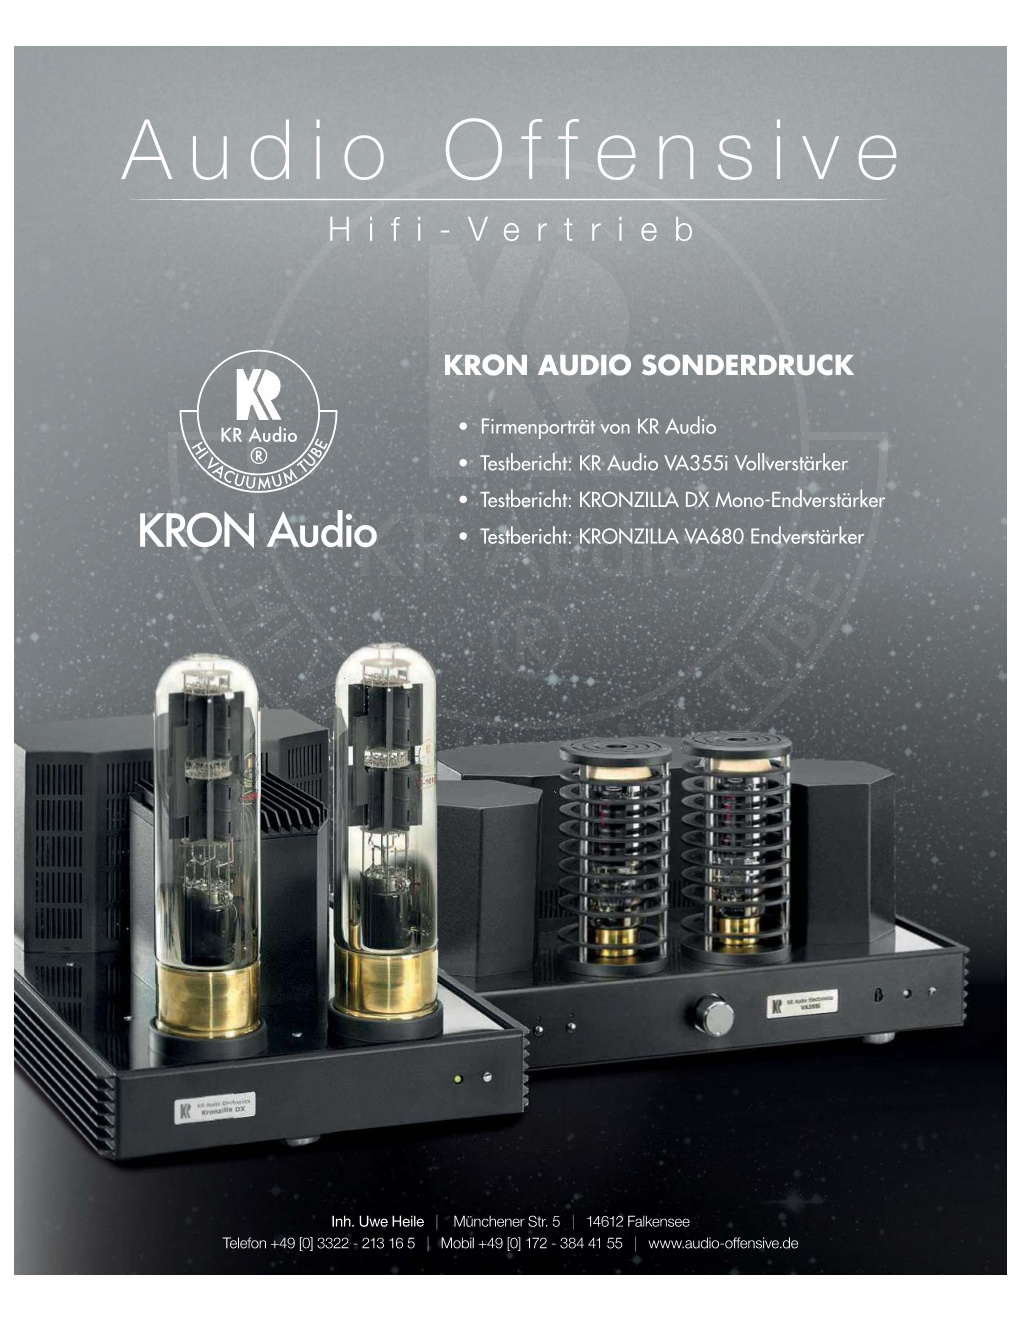 Kron Audio Sonderdruck